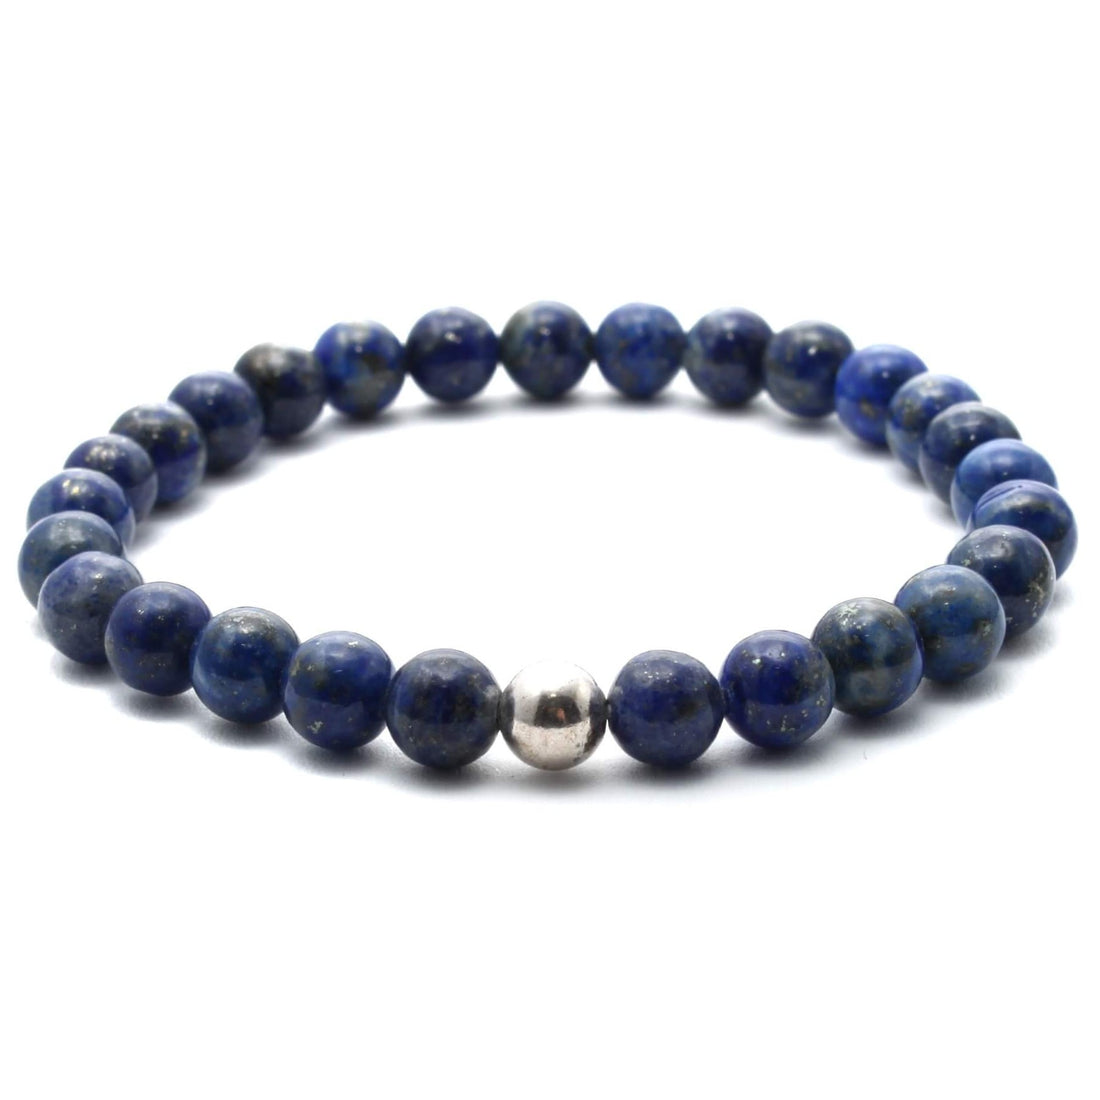 Lapis Lazuli krystal armbånd med 6mm perler